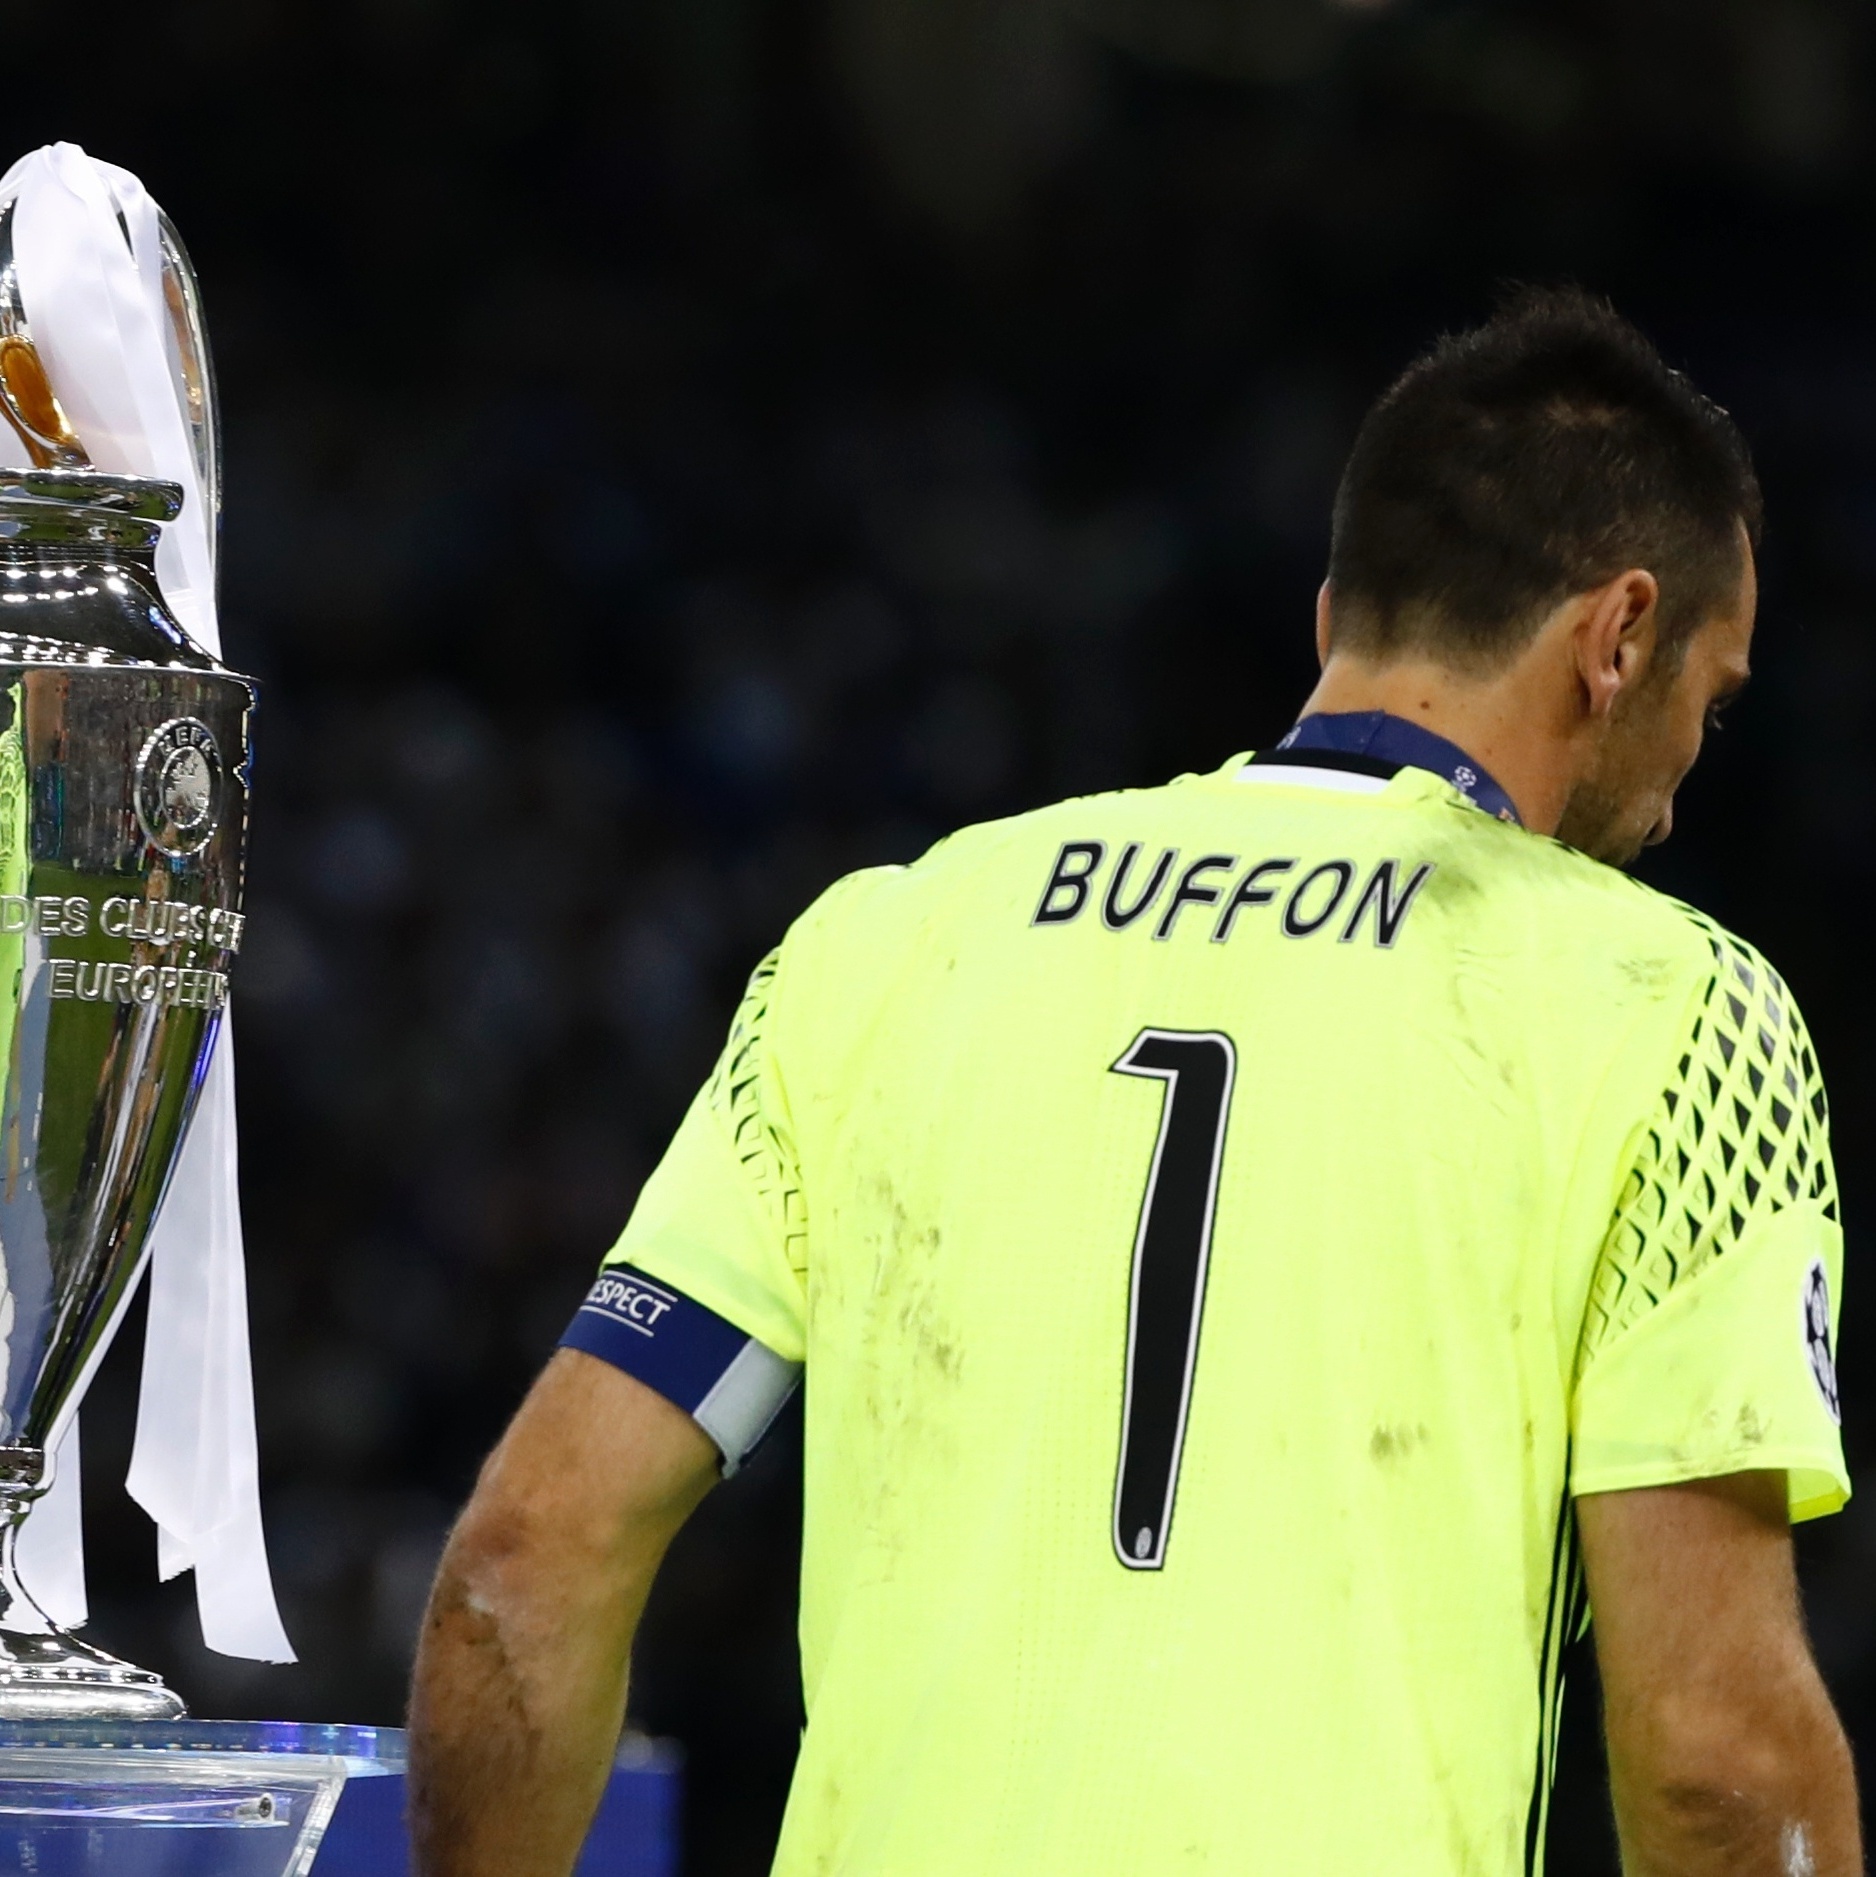 Juventus é único time das seis maiores ligas a vencer oito títulos seguidos  - 21/04/2019 - UOL Esporte